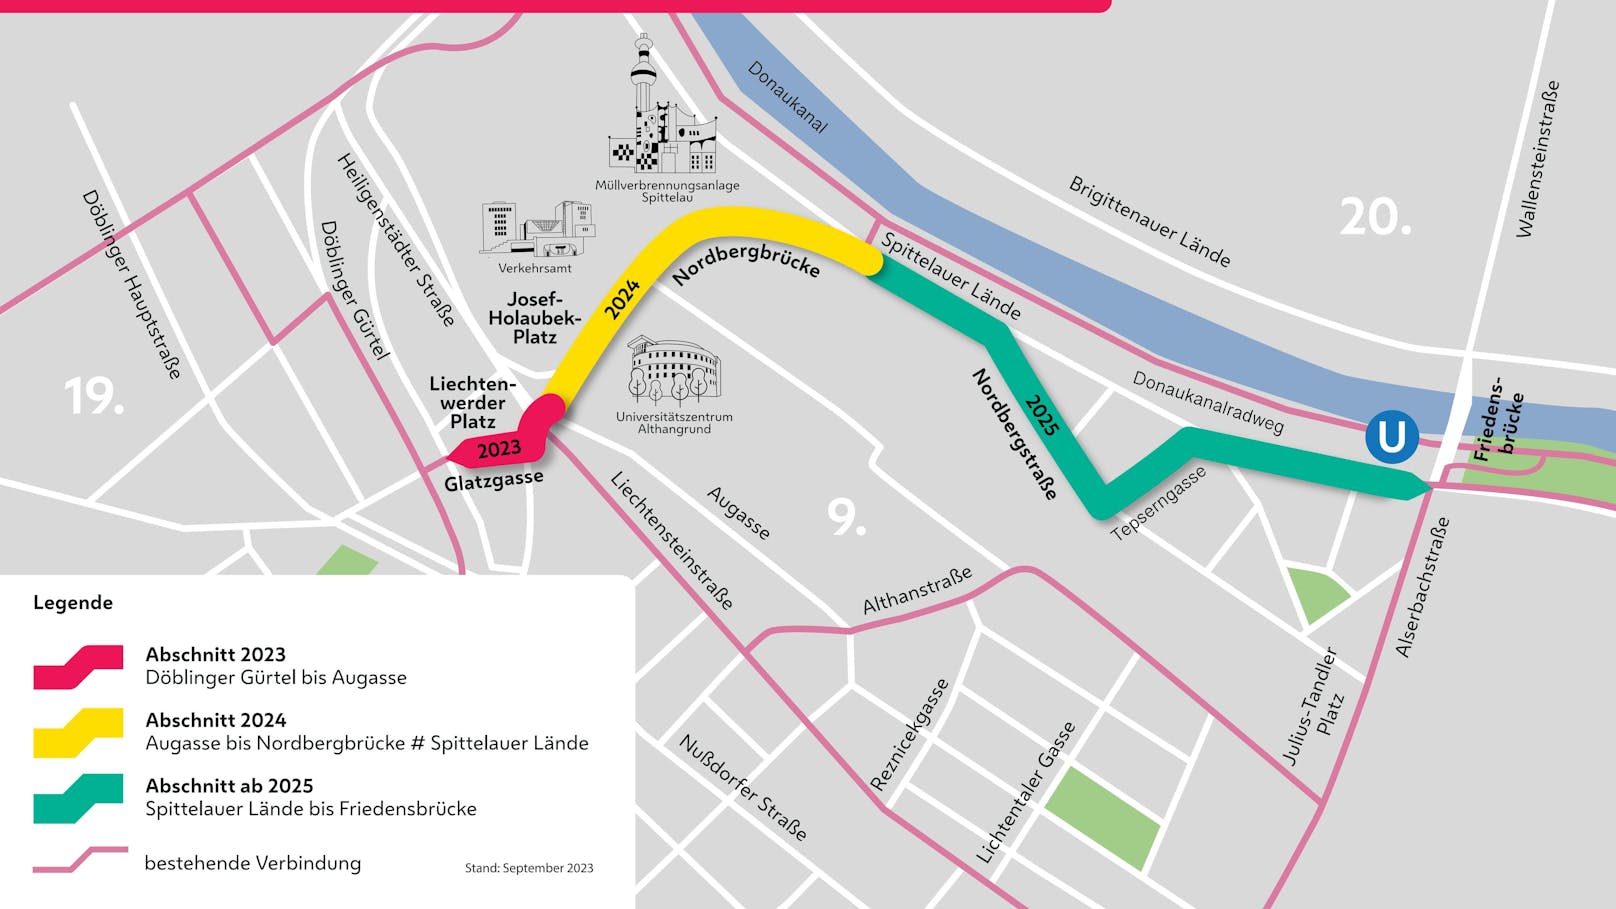 Die Pläne für die neuen Radwege zwischen dem 9. und 19. Bezirk in Wien, die bis 2025 gebaut werden.